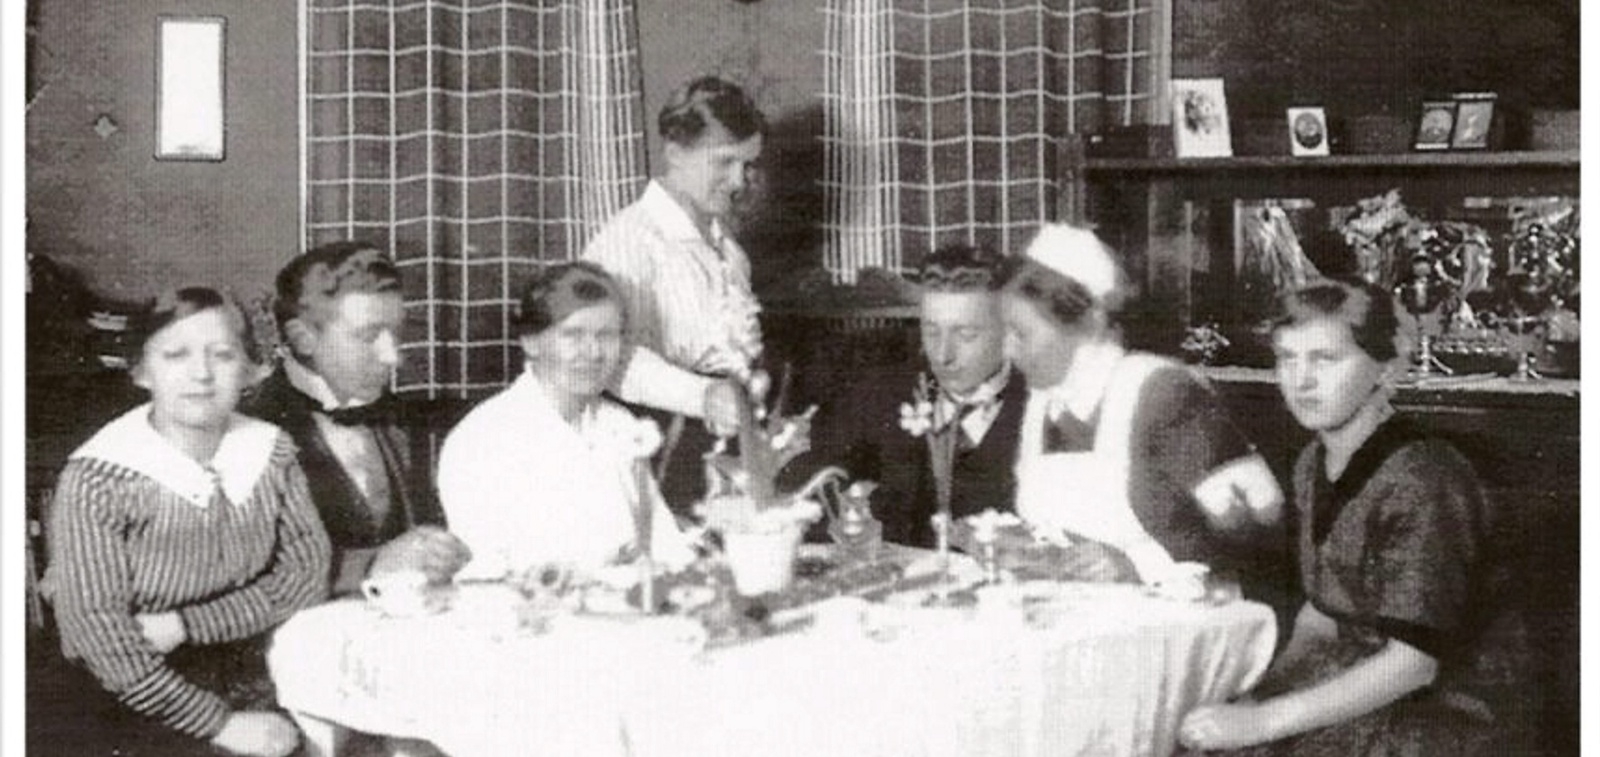 Personalstyrkan var inte så stor på den här tiden. Bilden är tagen någon gång på 1920-talet under en kaffestund. 	
Foto: Privat